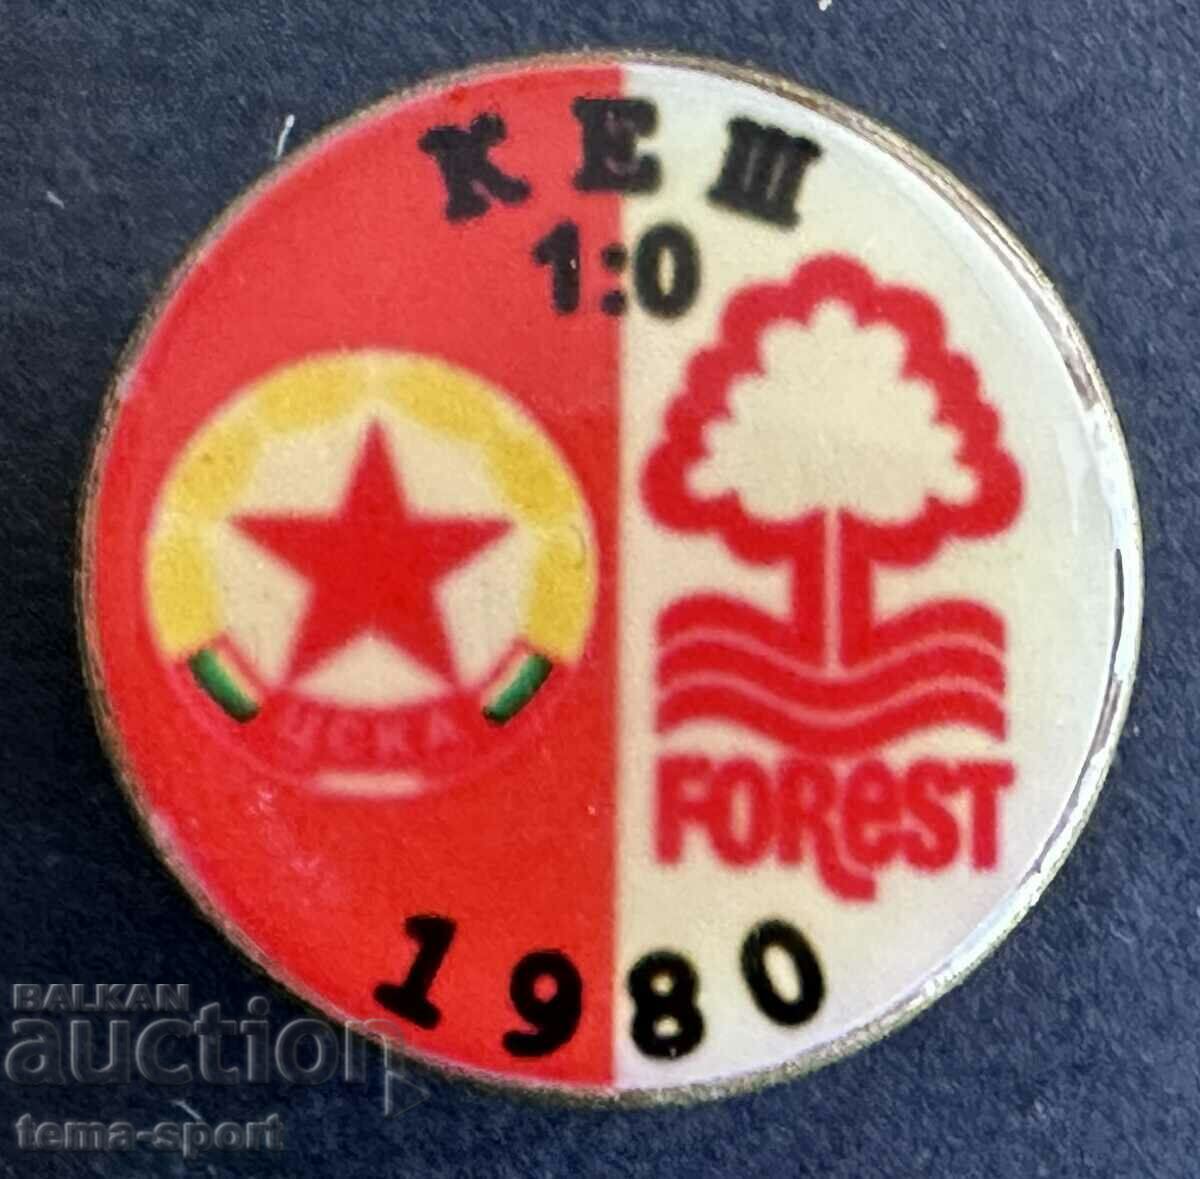 377 България знак футболен клуб ЦСКА Нотингам Форест 1980г.